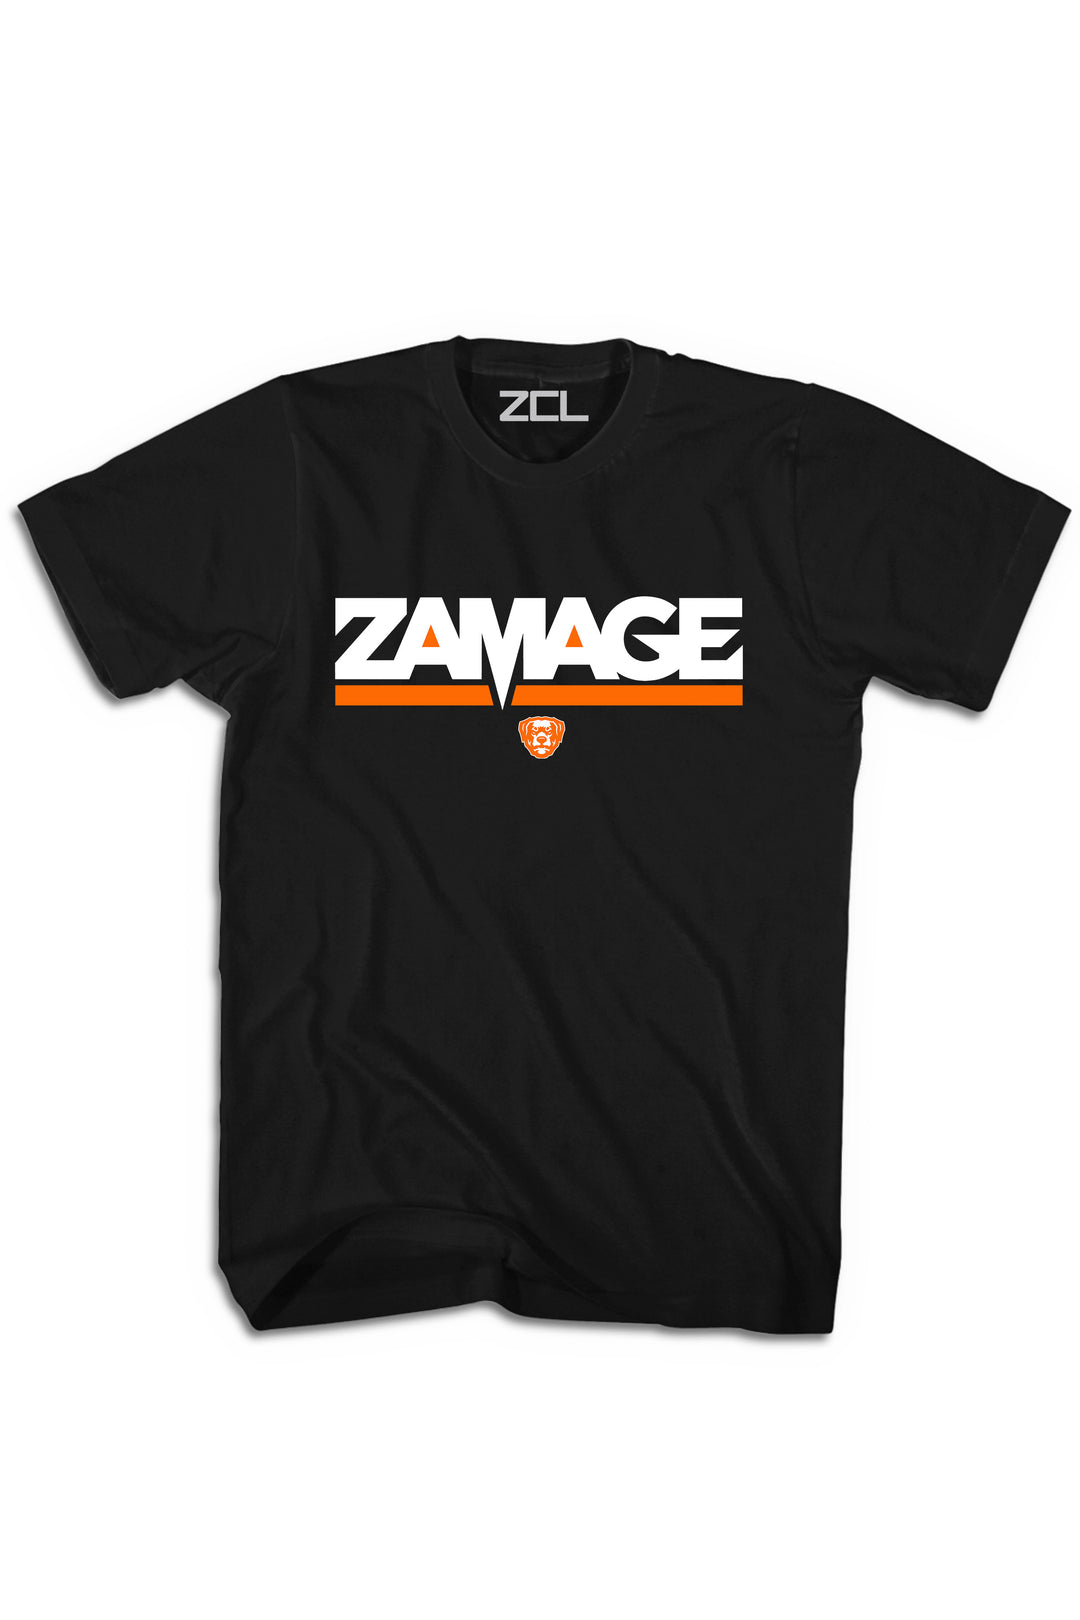 Zamage Logo Tee (Orange) - Zamage